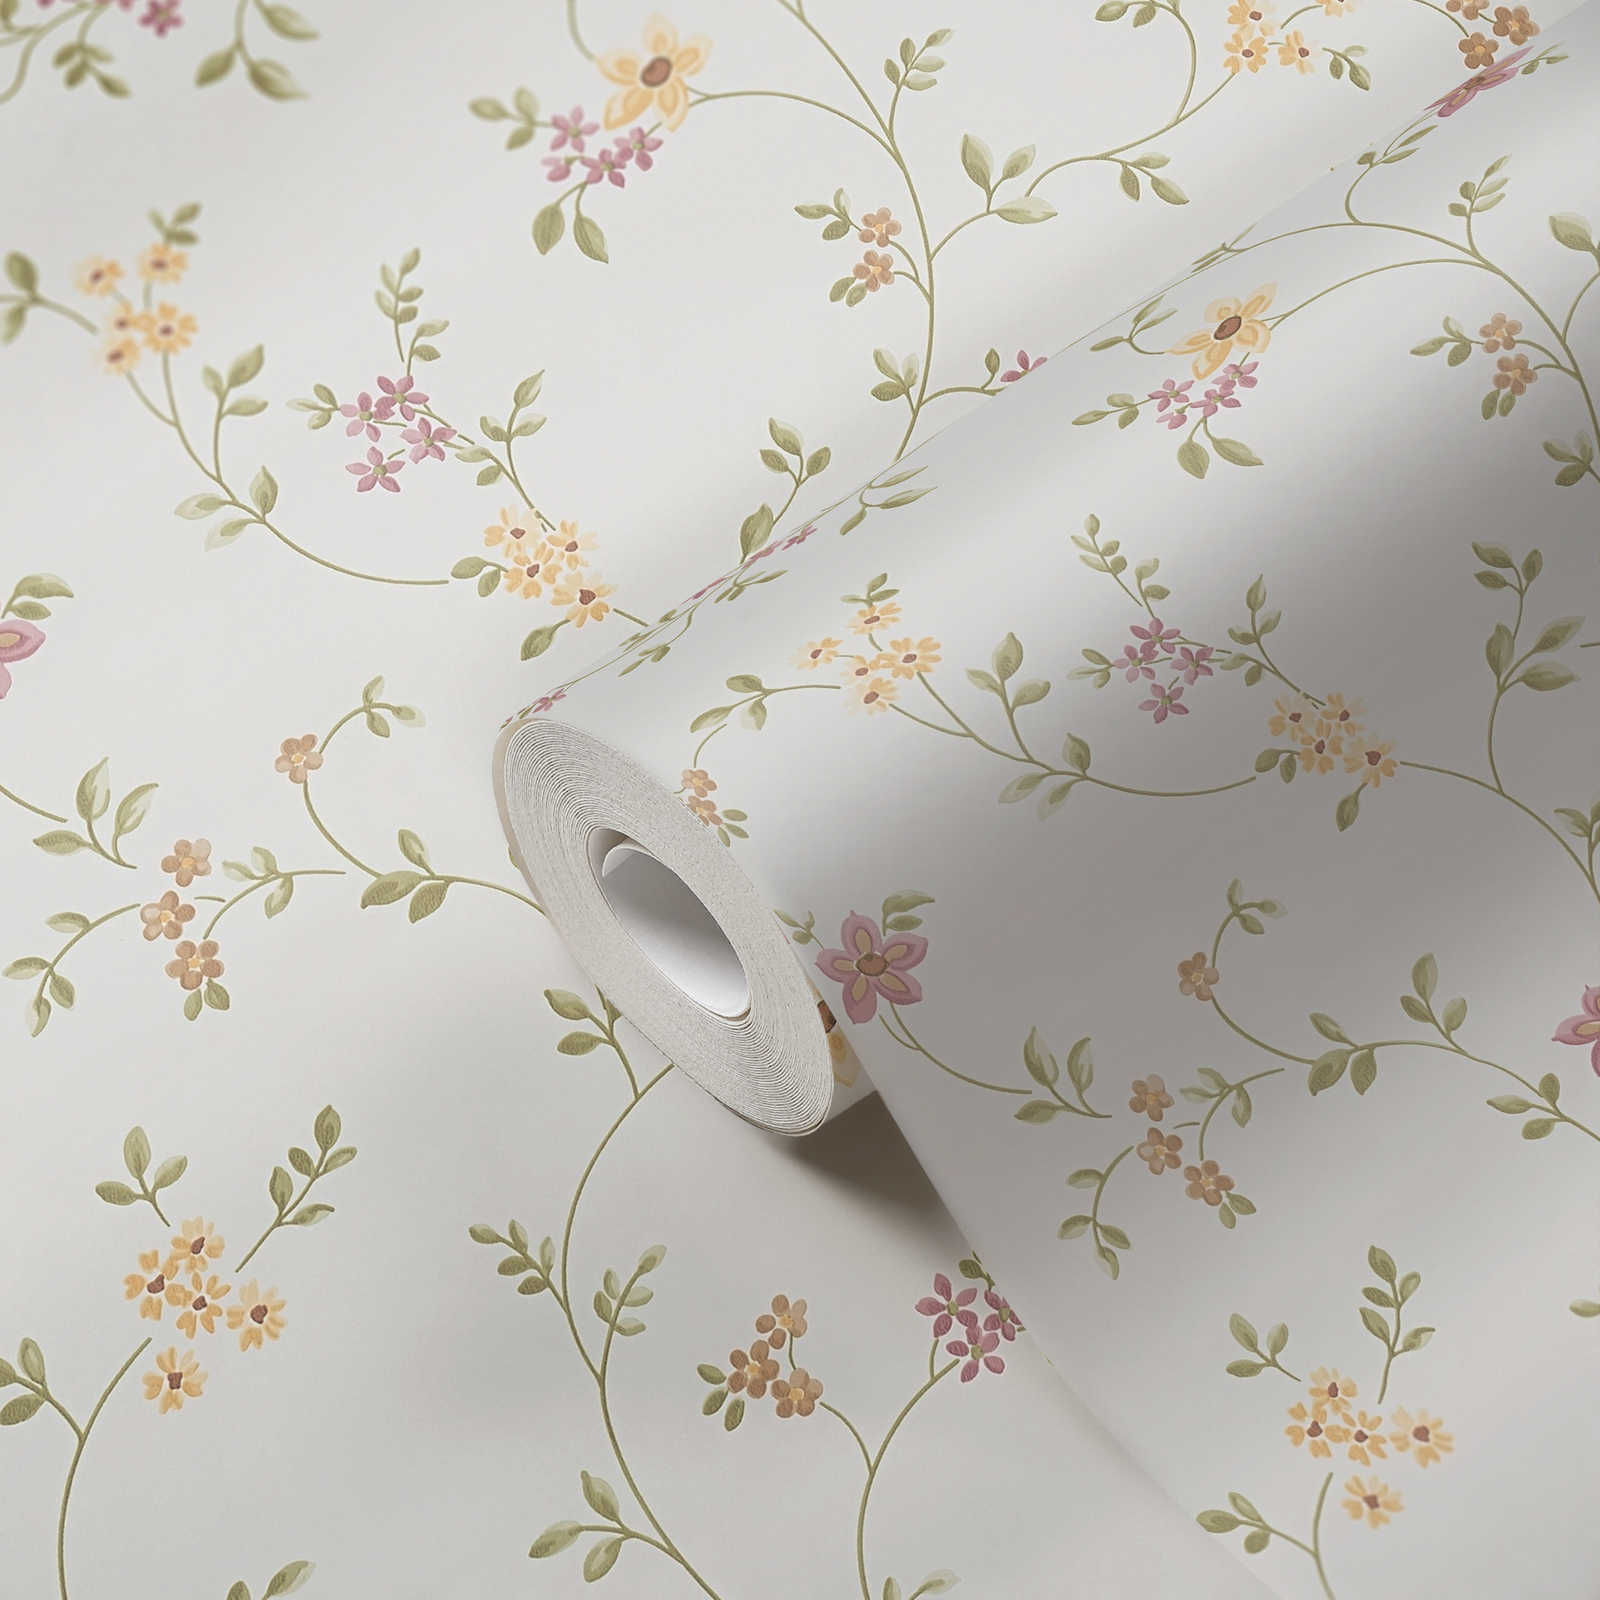             Papier peint adhésif | motif floral avec rinceaux discrets - crème, vert, beige
        